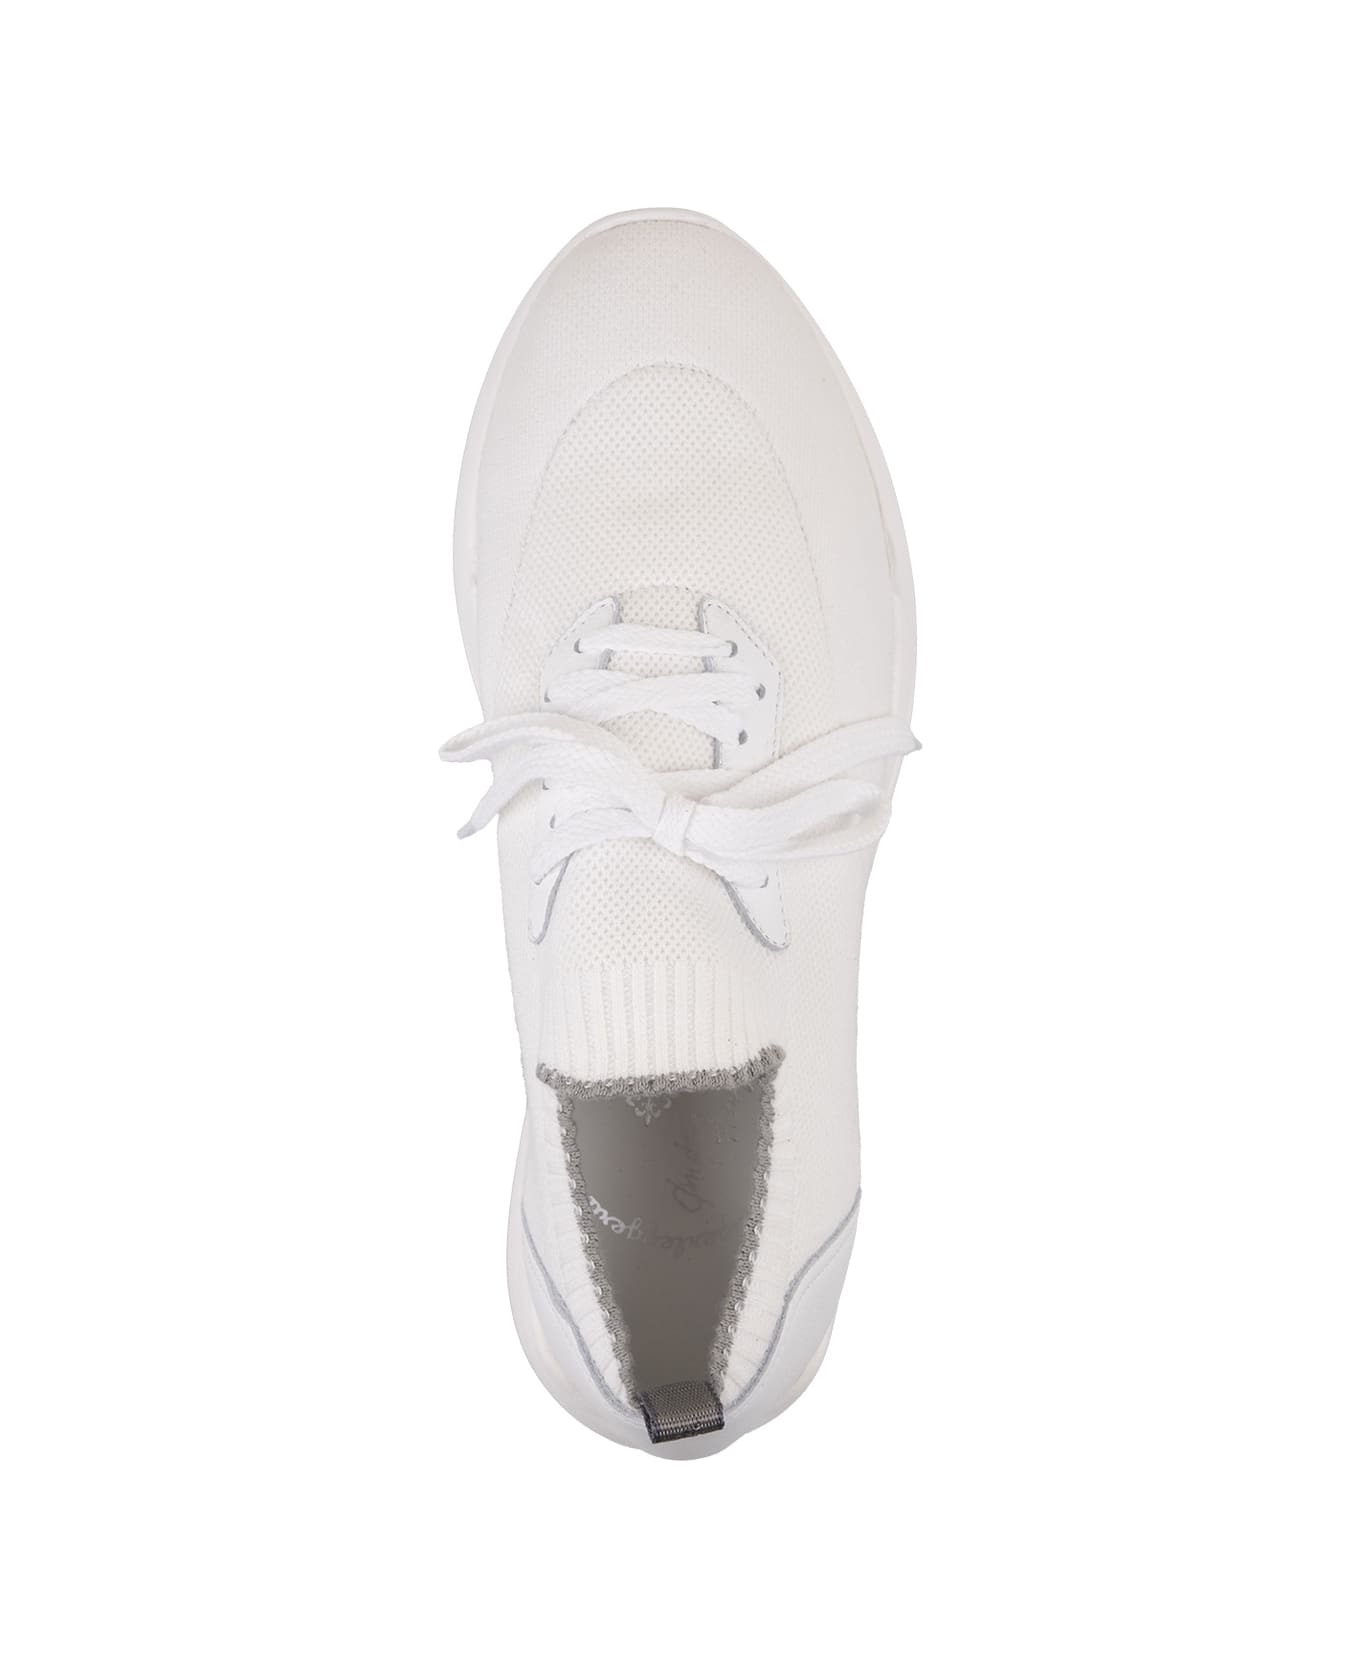 Andrea Ventura W-dragon Sneakers In White Fashion Fabric - White